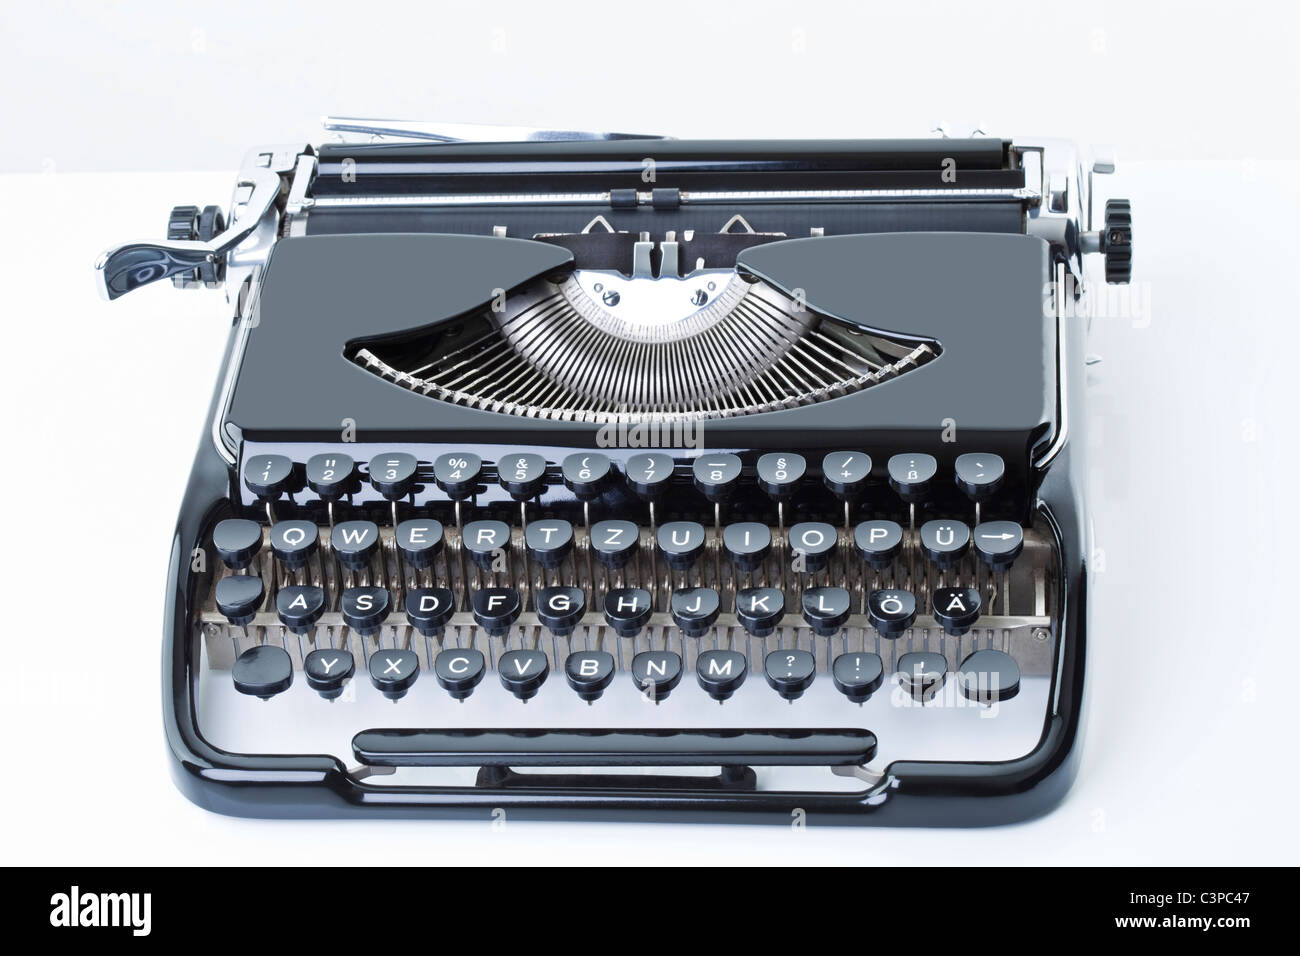 Old typewriter, close-up Stock Photo